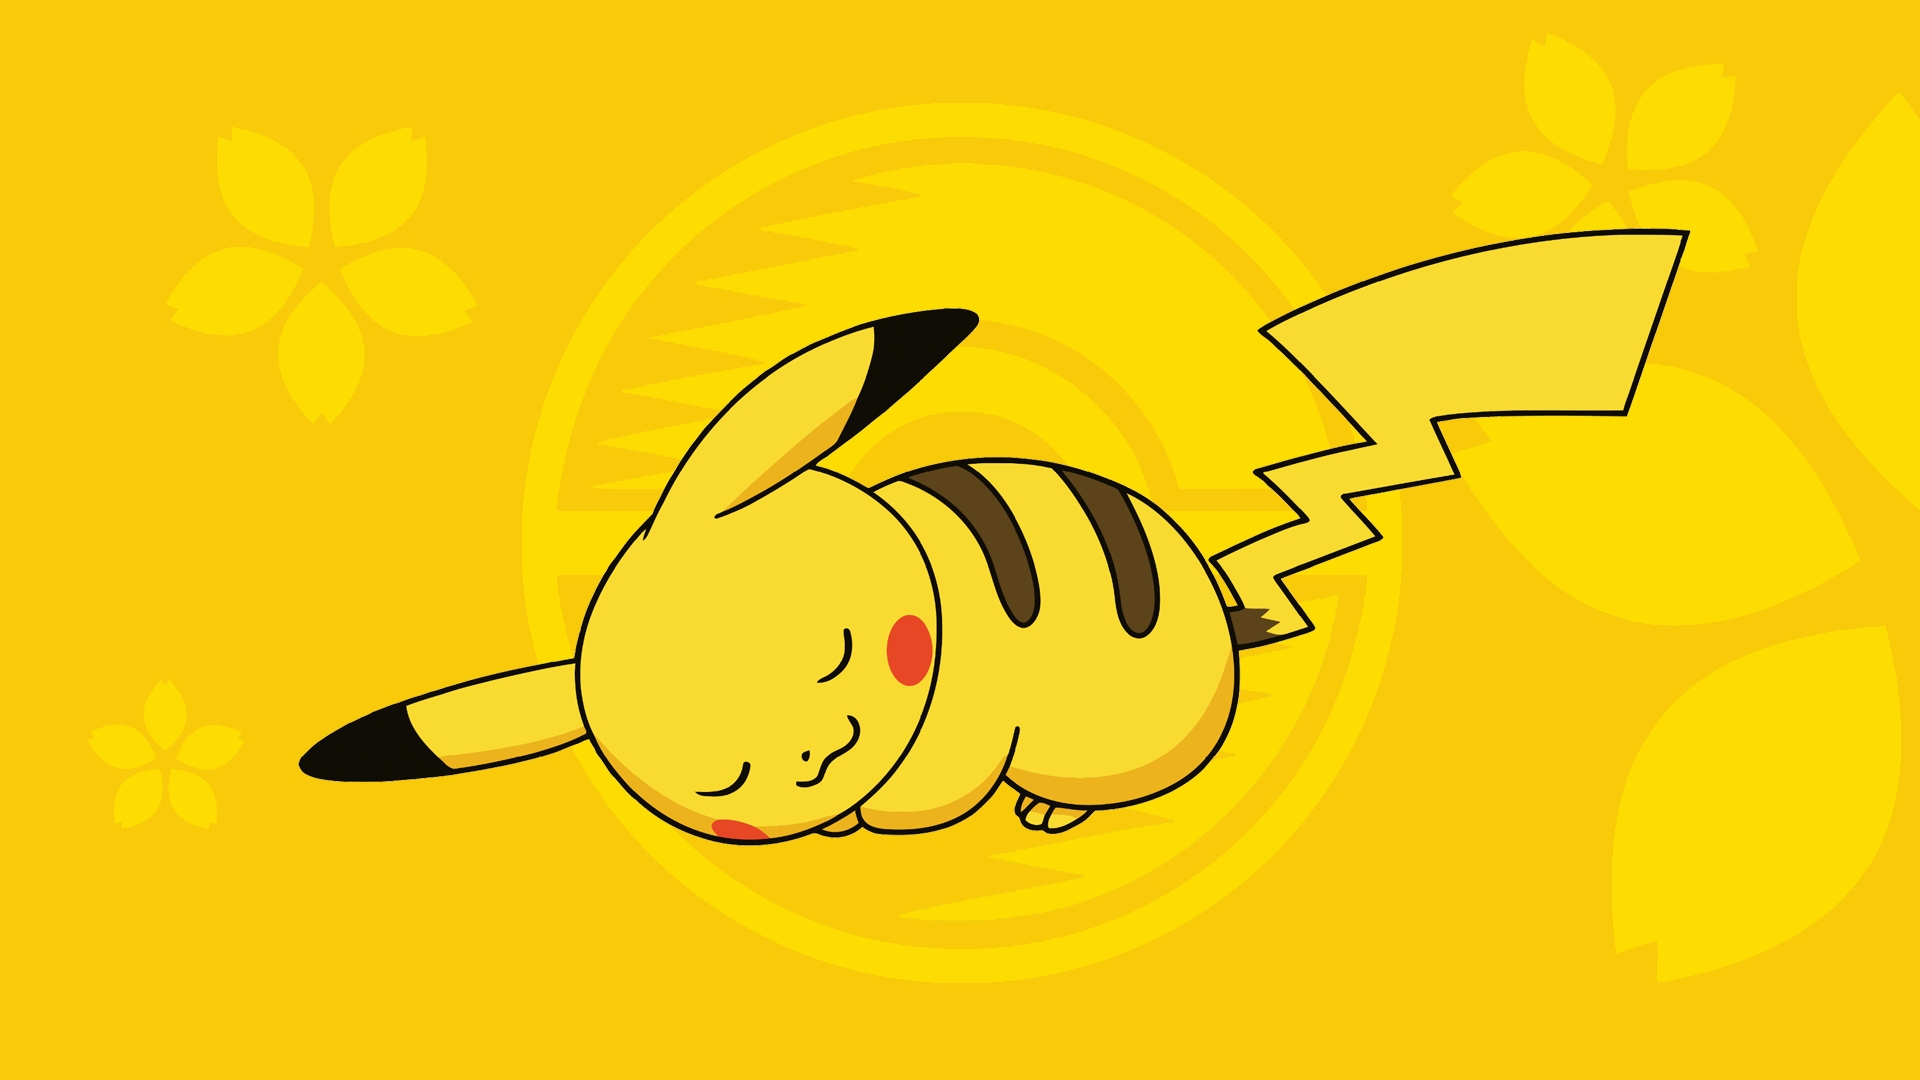 Pikachu - chú chuột điện nổi tiếng từng xuất hiện trên truyền hình sẽ xuất hiện ngay trên màn hình điện thoại của bạn. Hãy cùng bắt đầu ngày mới với những hình nền Pikachu đáng yêu và hiện đại nhất. Hãy click để tải ngay!